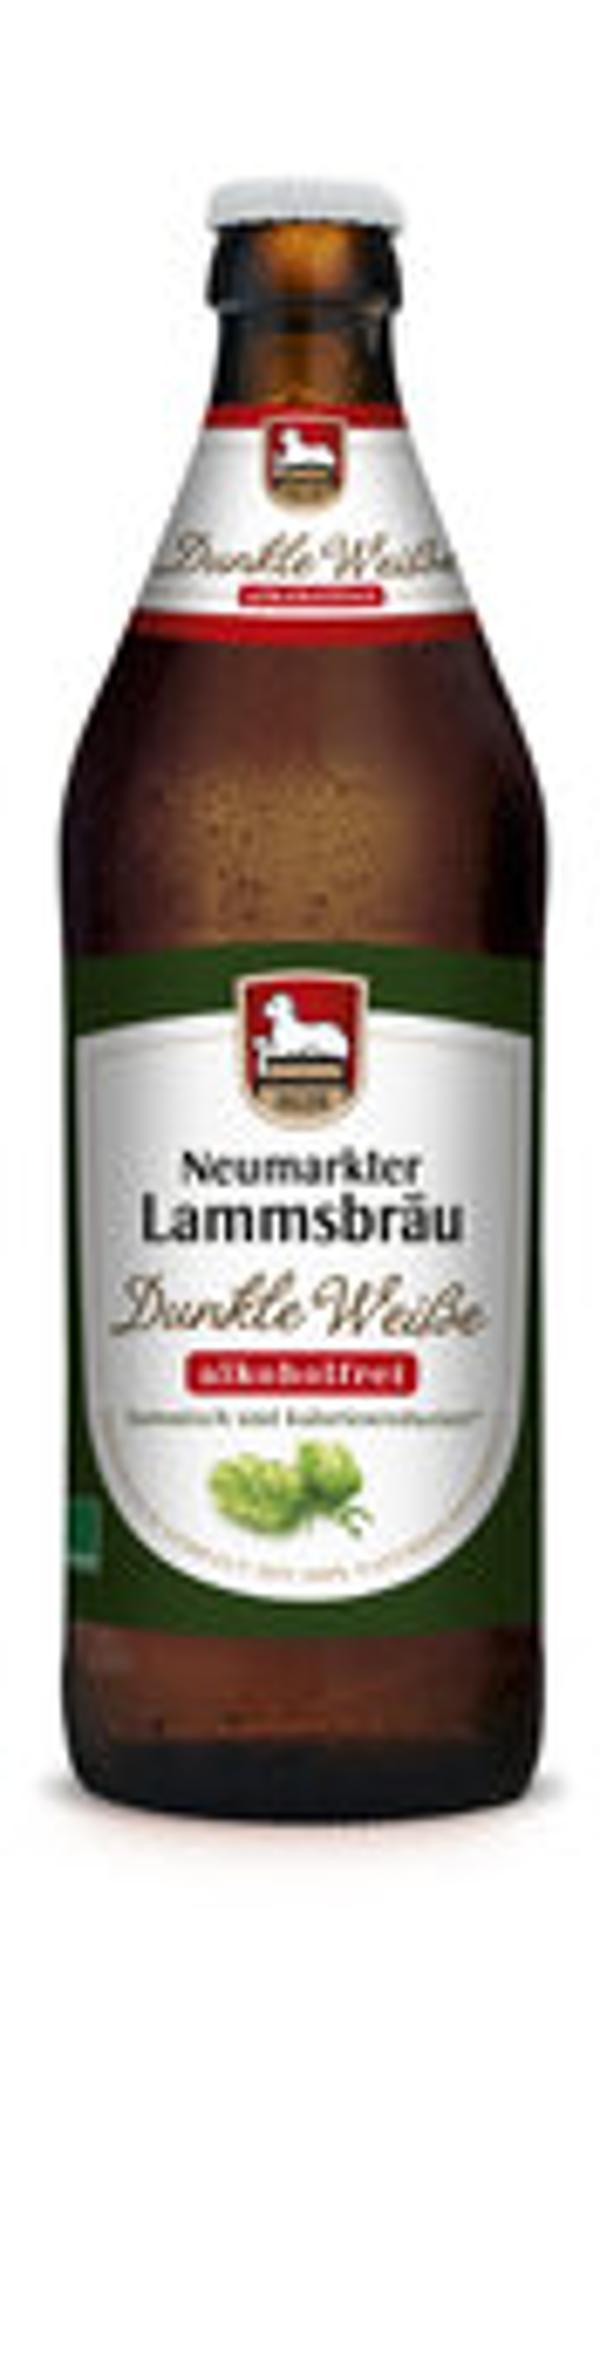 Produktfoto zu Lammsbräu Hefeweizen dunkel alkoholfrei 0,5l